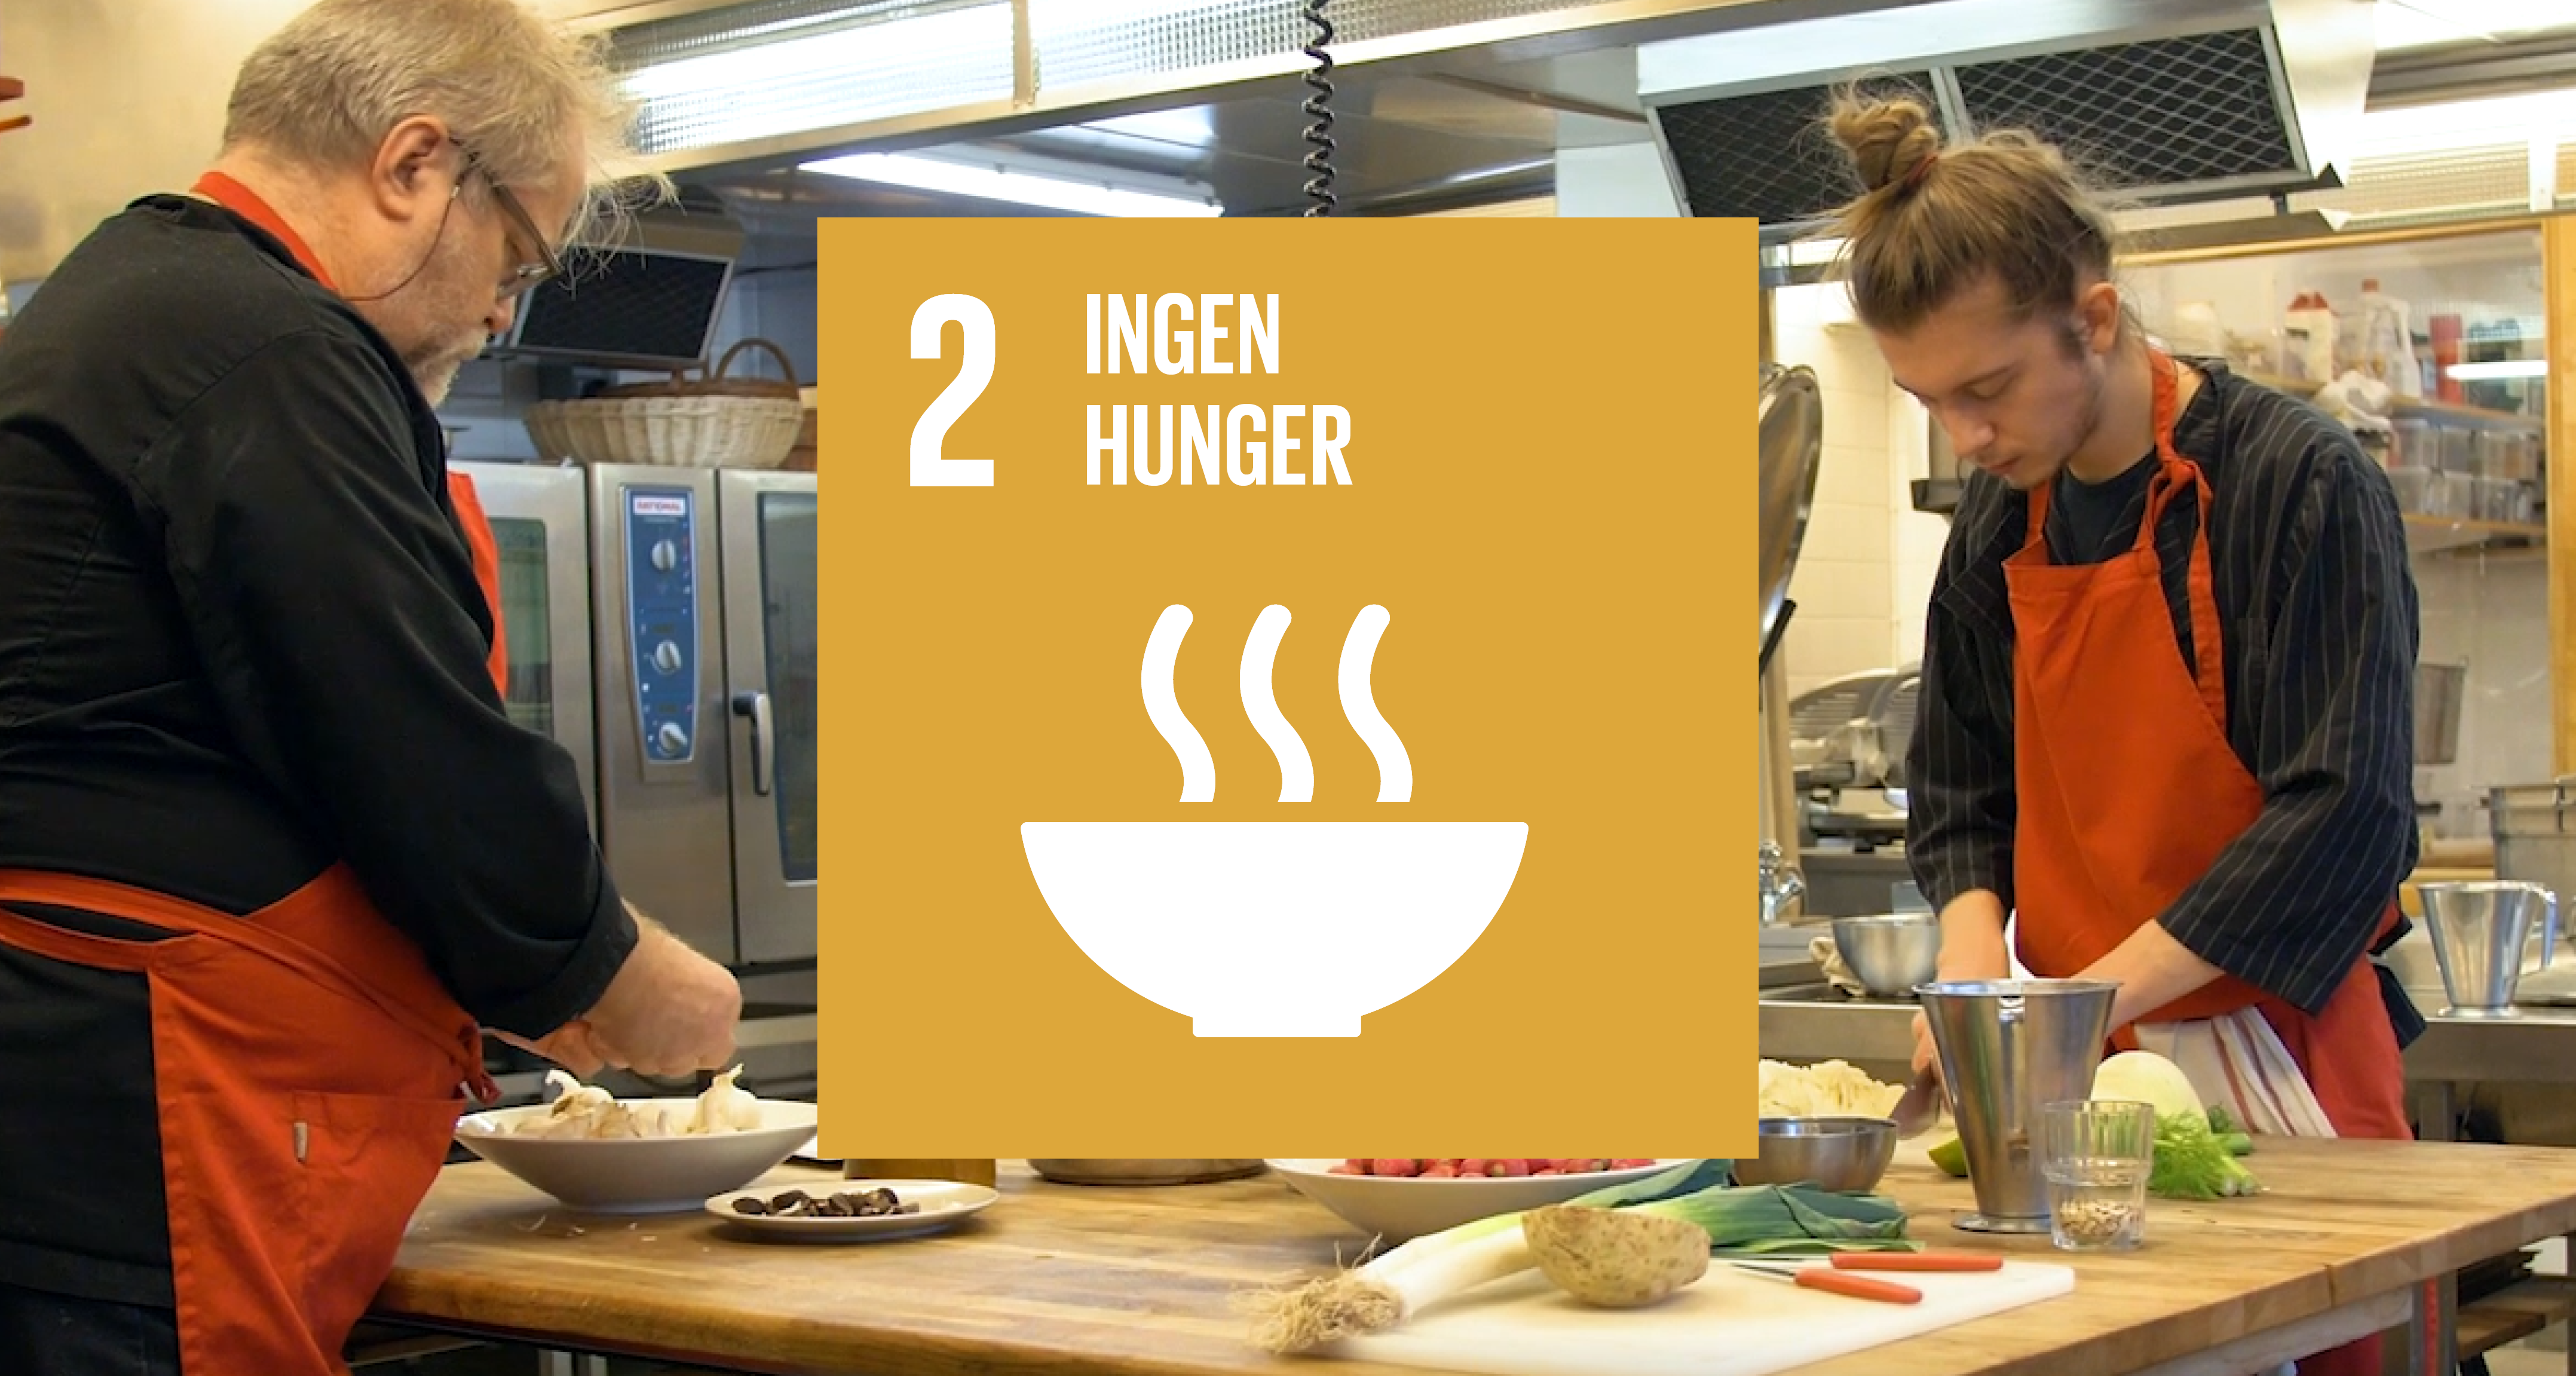 Bild på ett kök, två personer lagar mat, en grafisk bild med texten "2 Ingen hunger" mellan dem.